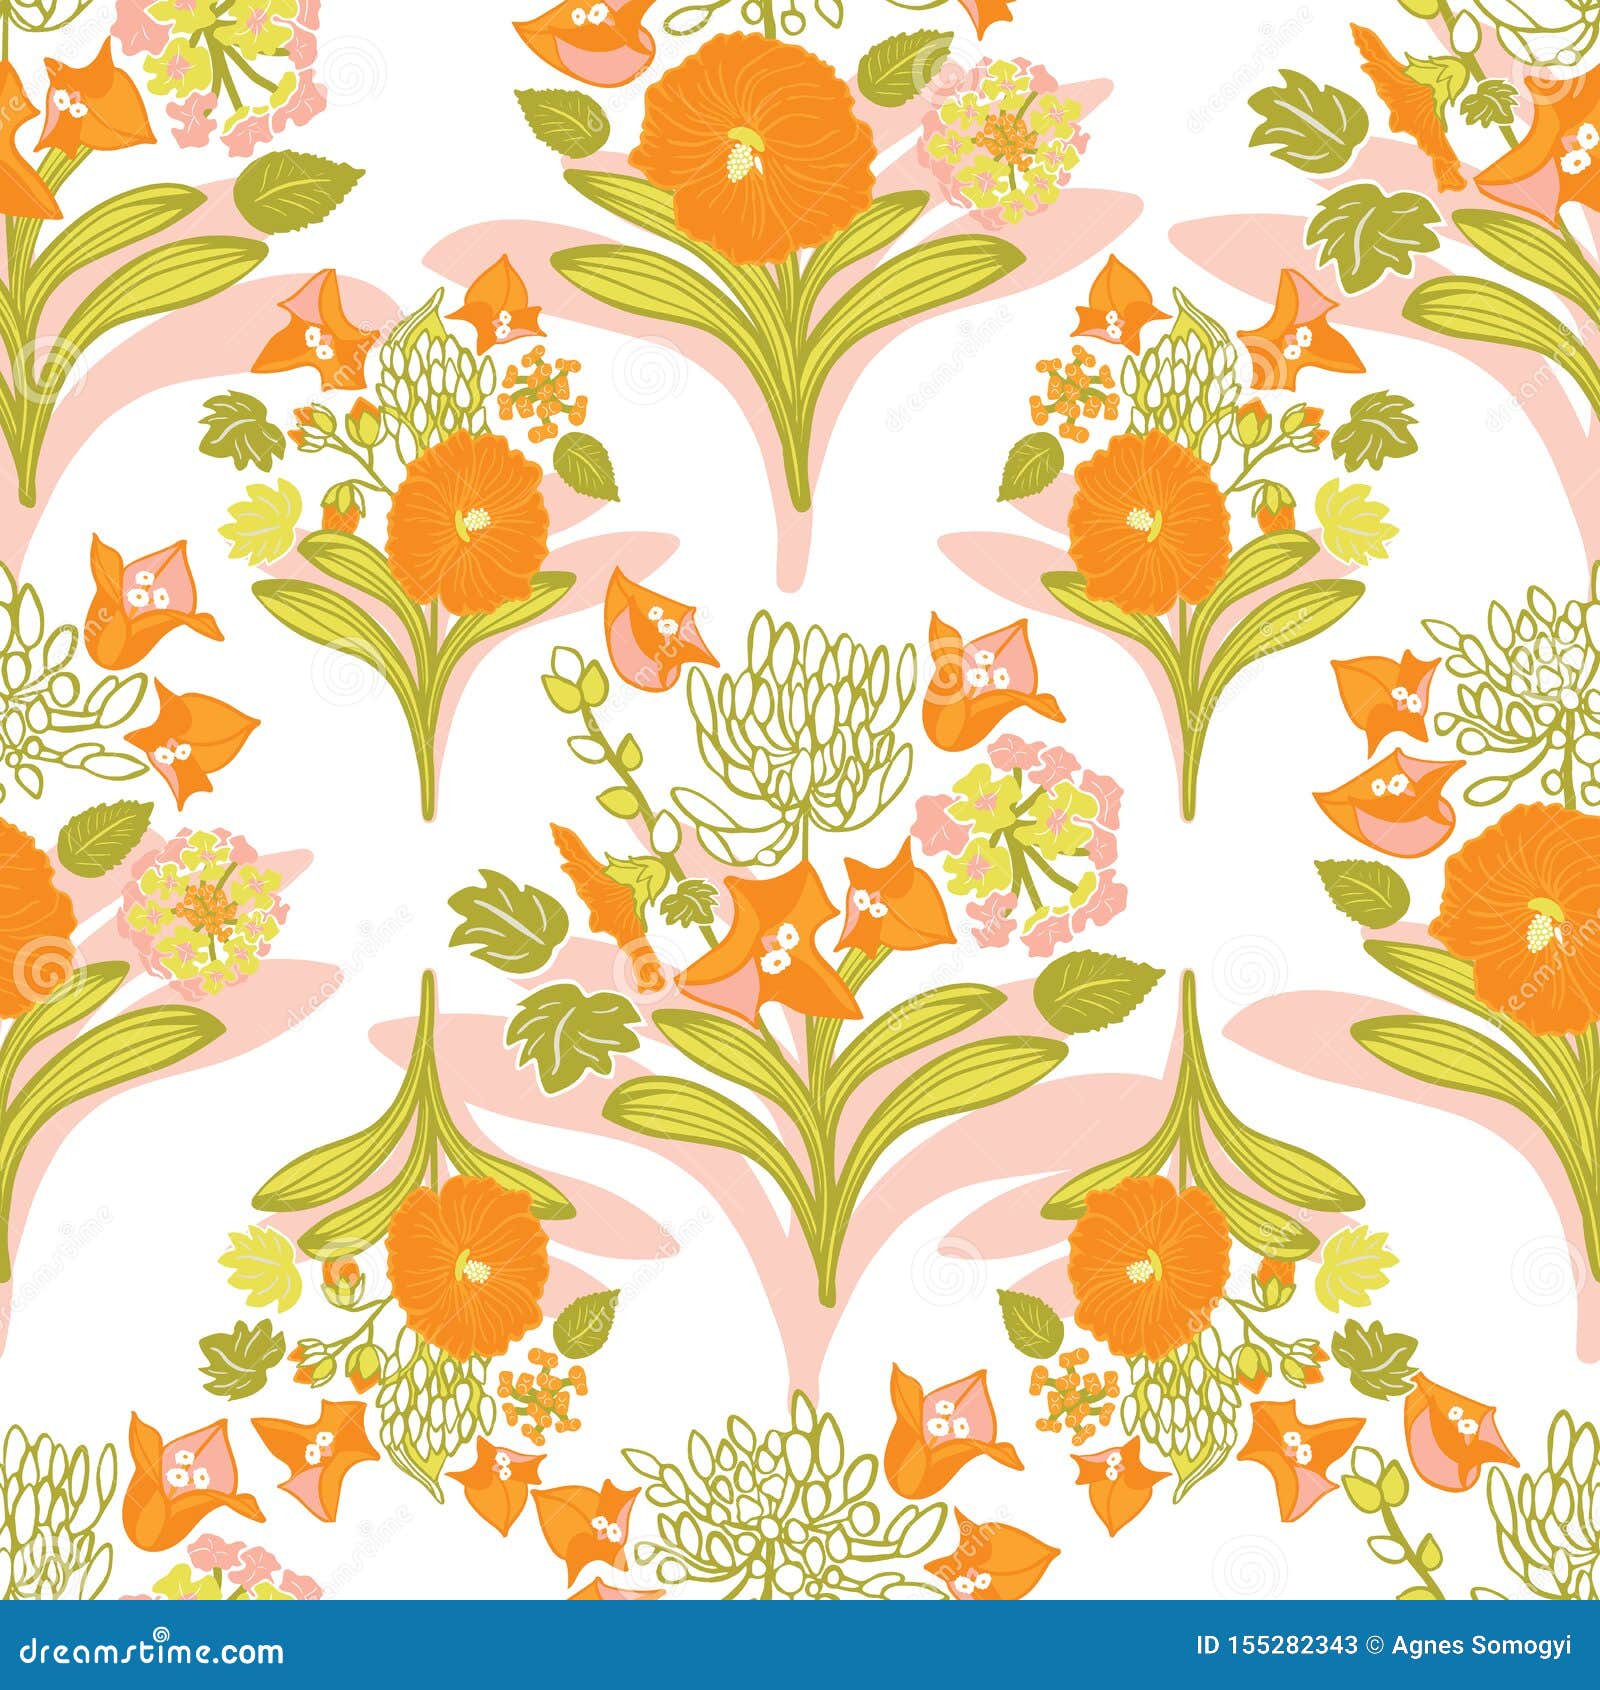 Orange Floral Background Images  Free Download on Freepik